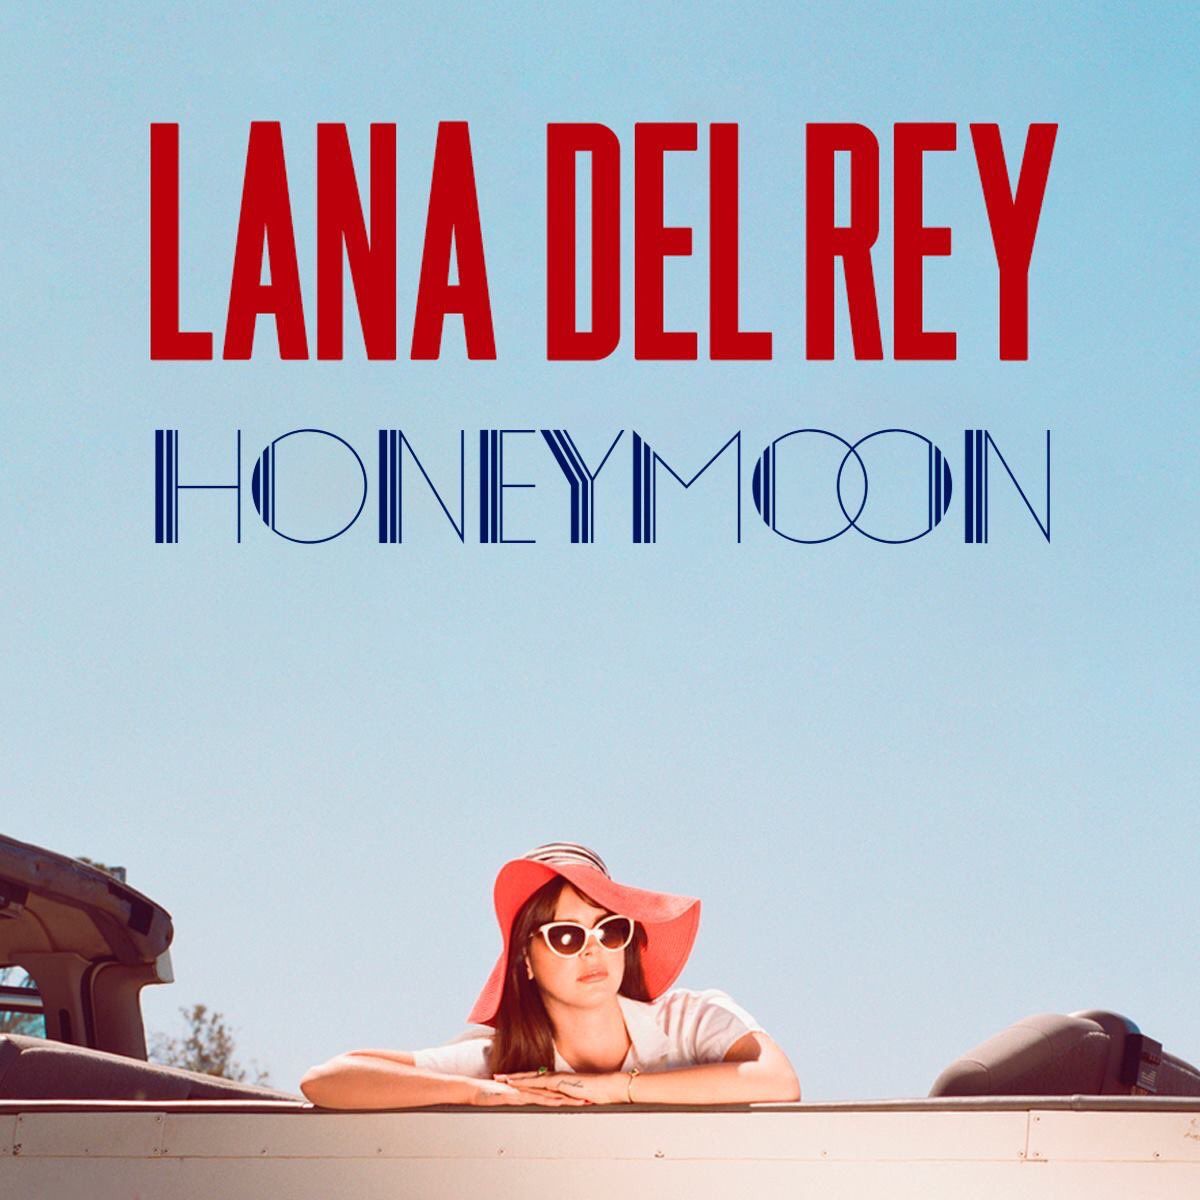 Lana Del Rey “honeymoon” album. Lana del rey honeymoon, Honeymoon album, Lana del rey